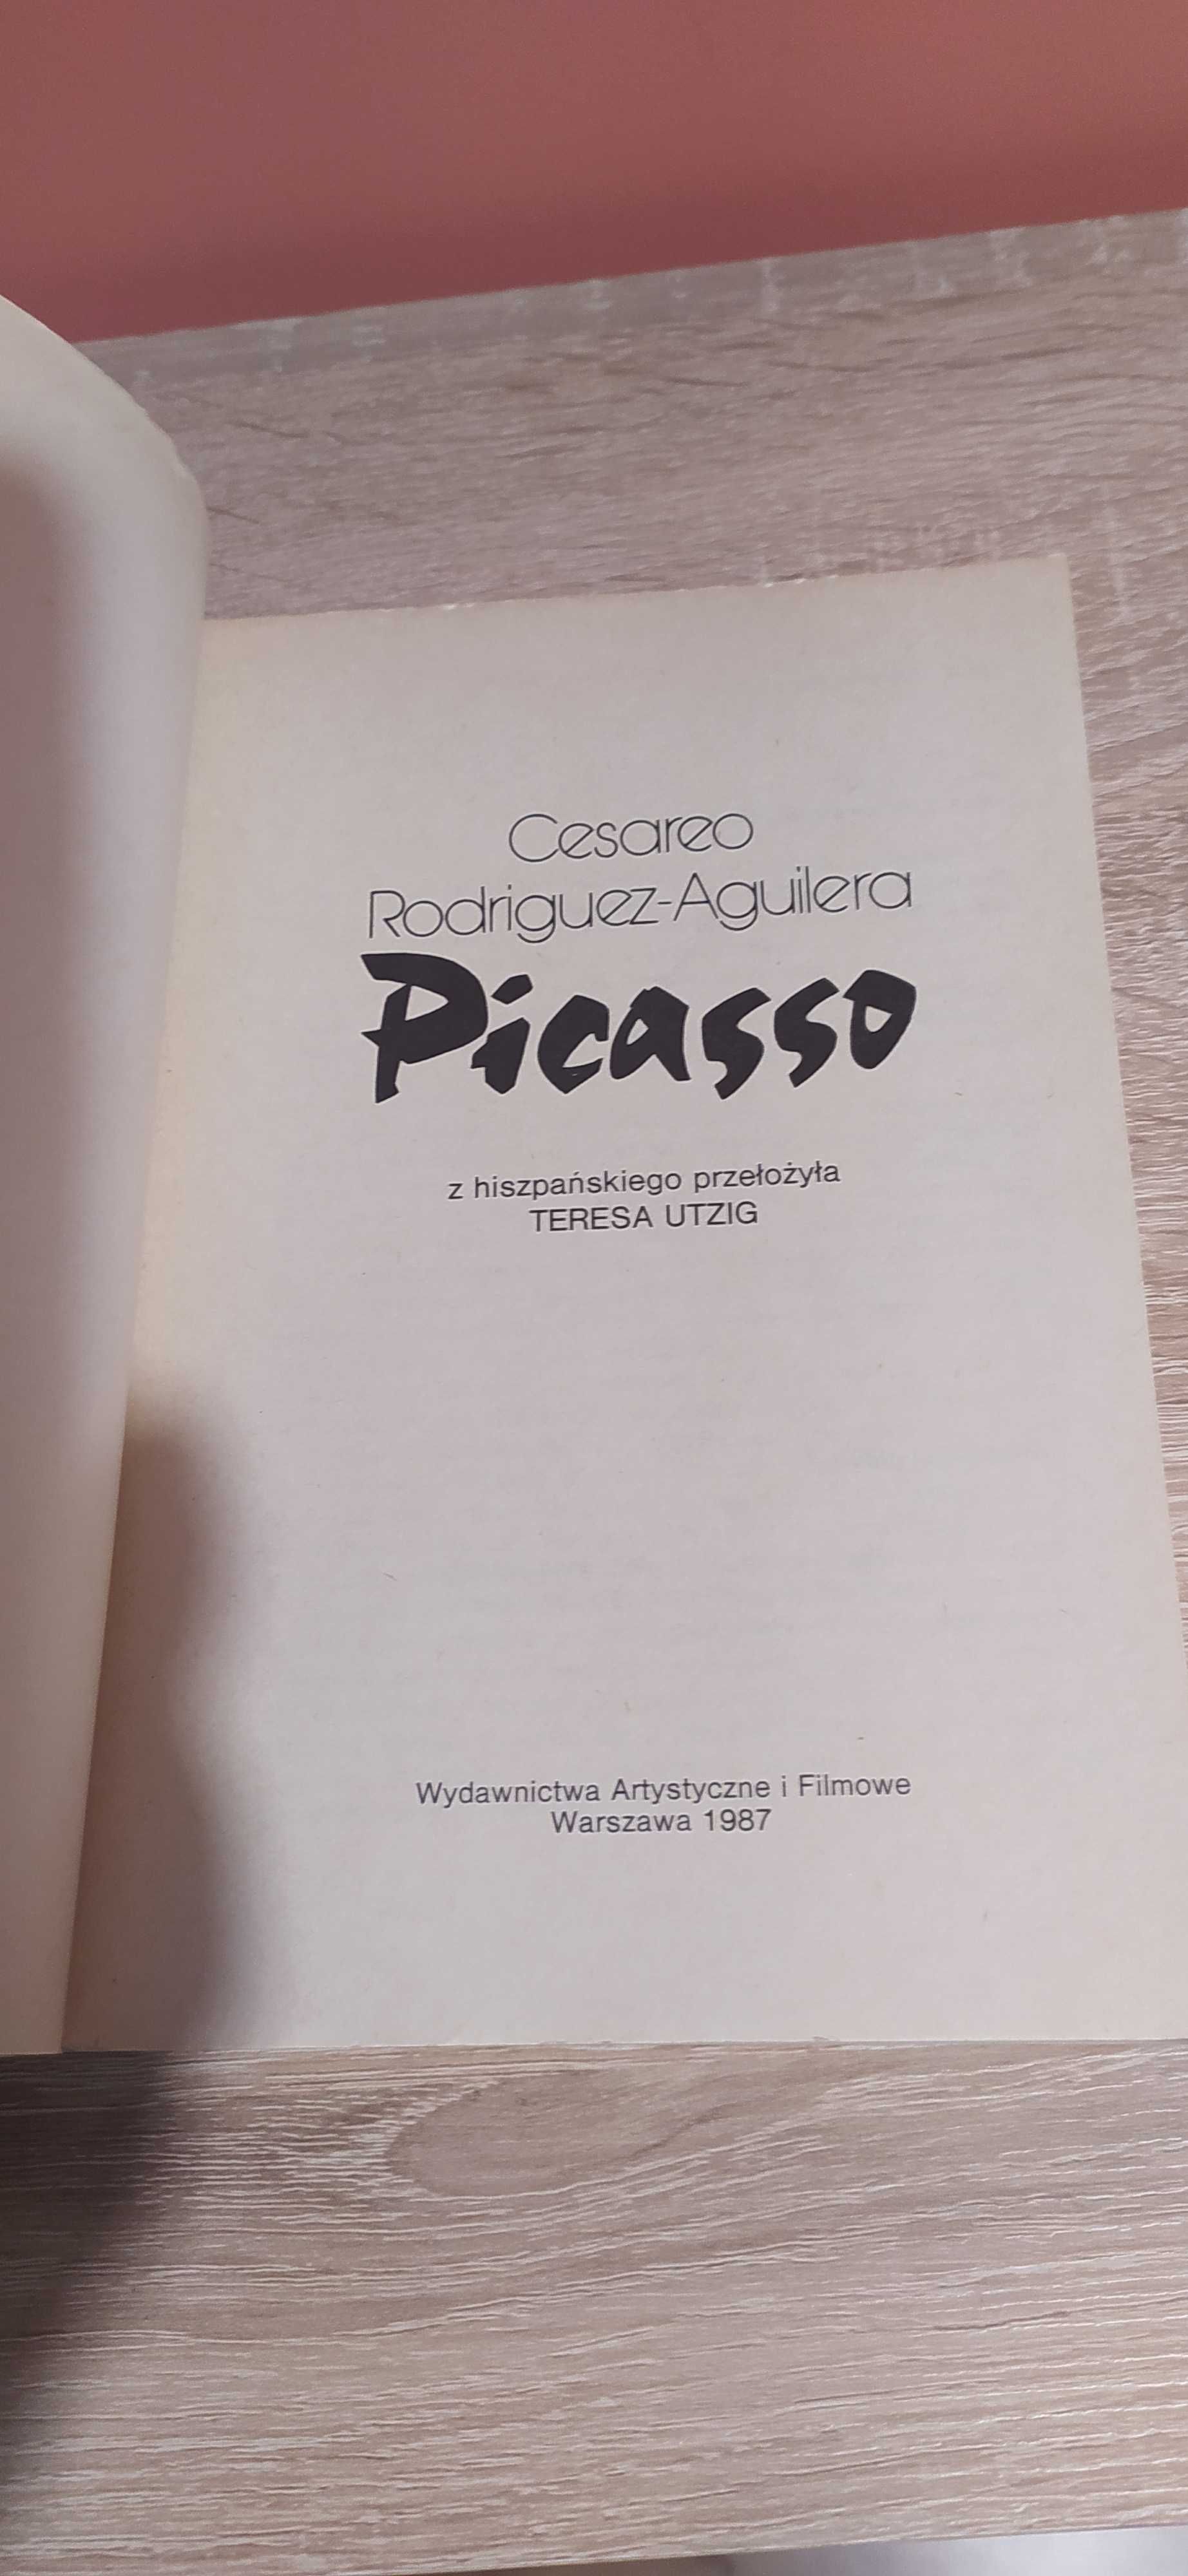 Picasso - Cesareo Rodriguez-Aguilera